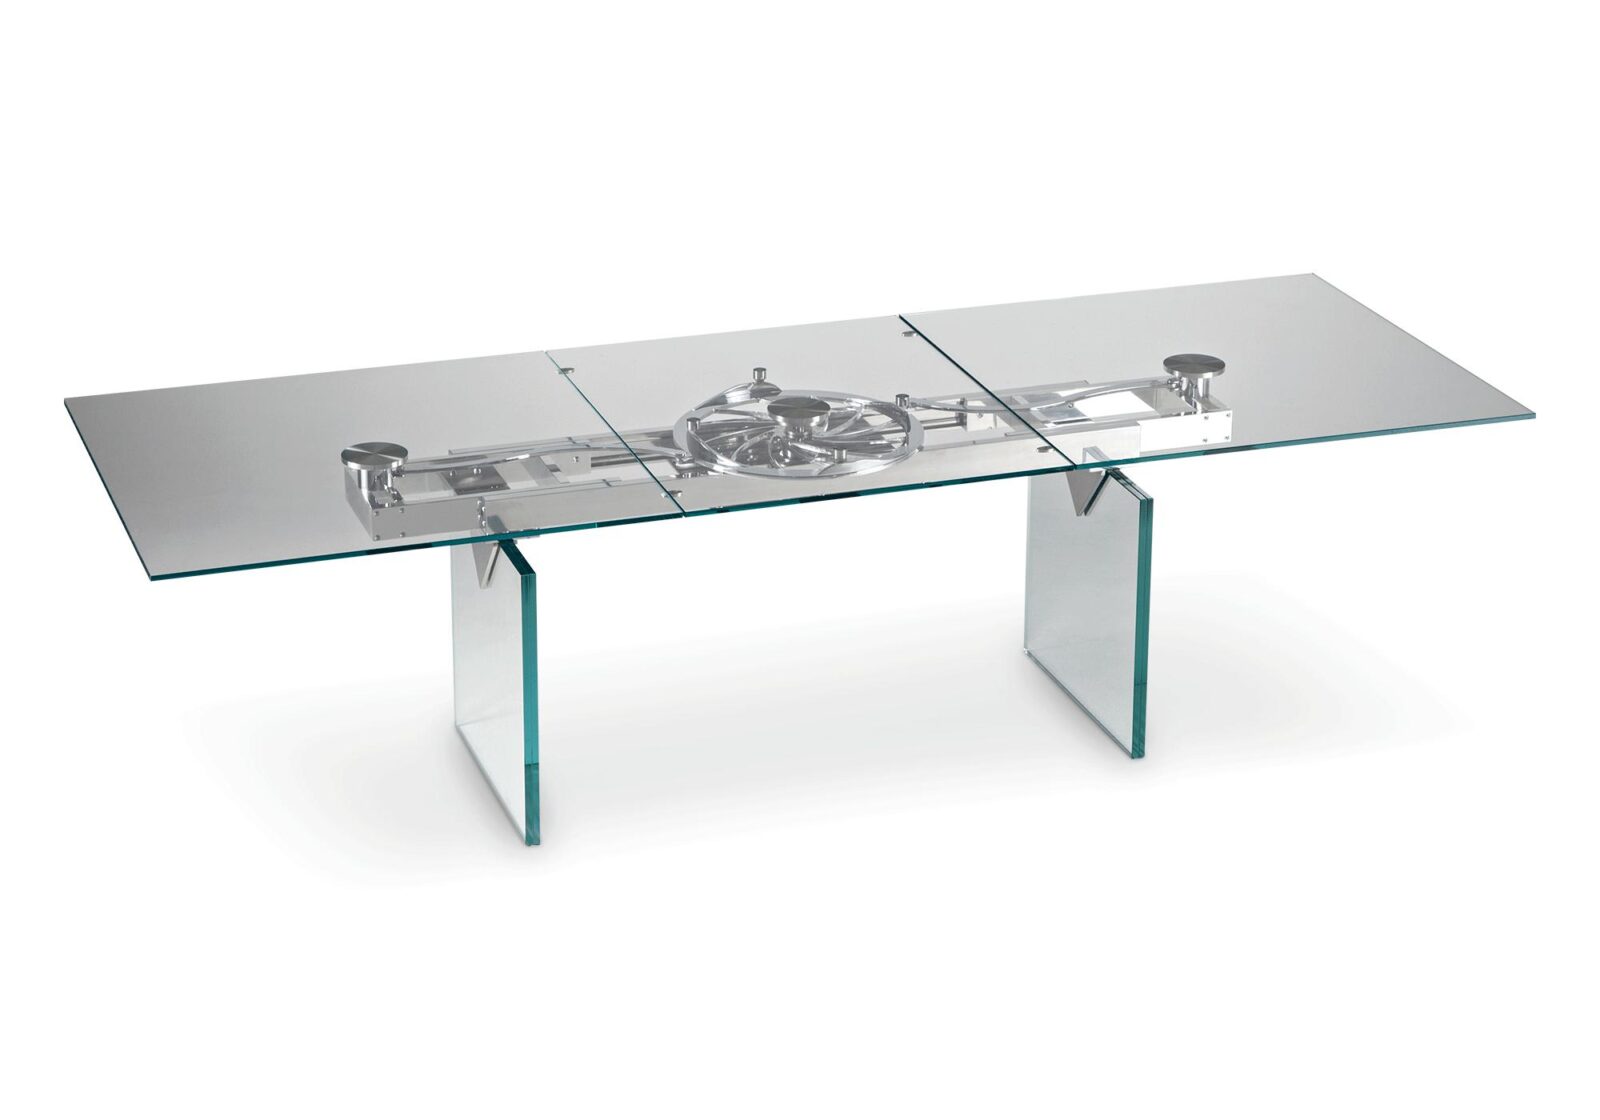 Auszugstisch Alina. Tischplatte aus Klarglas. Klarglas. L 200/280 B 100 H 75 cm. Erhältlich bei Möbel Gallati.